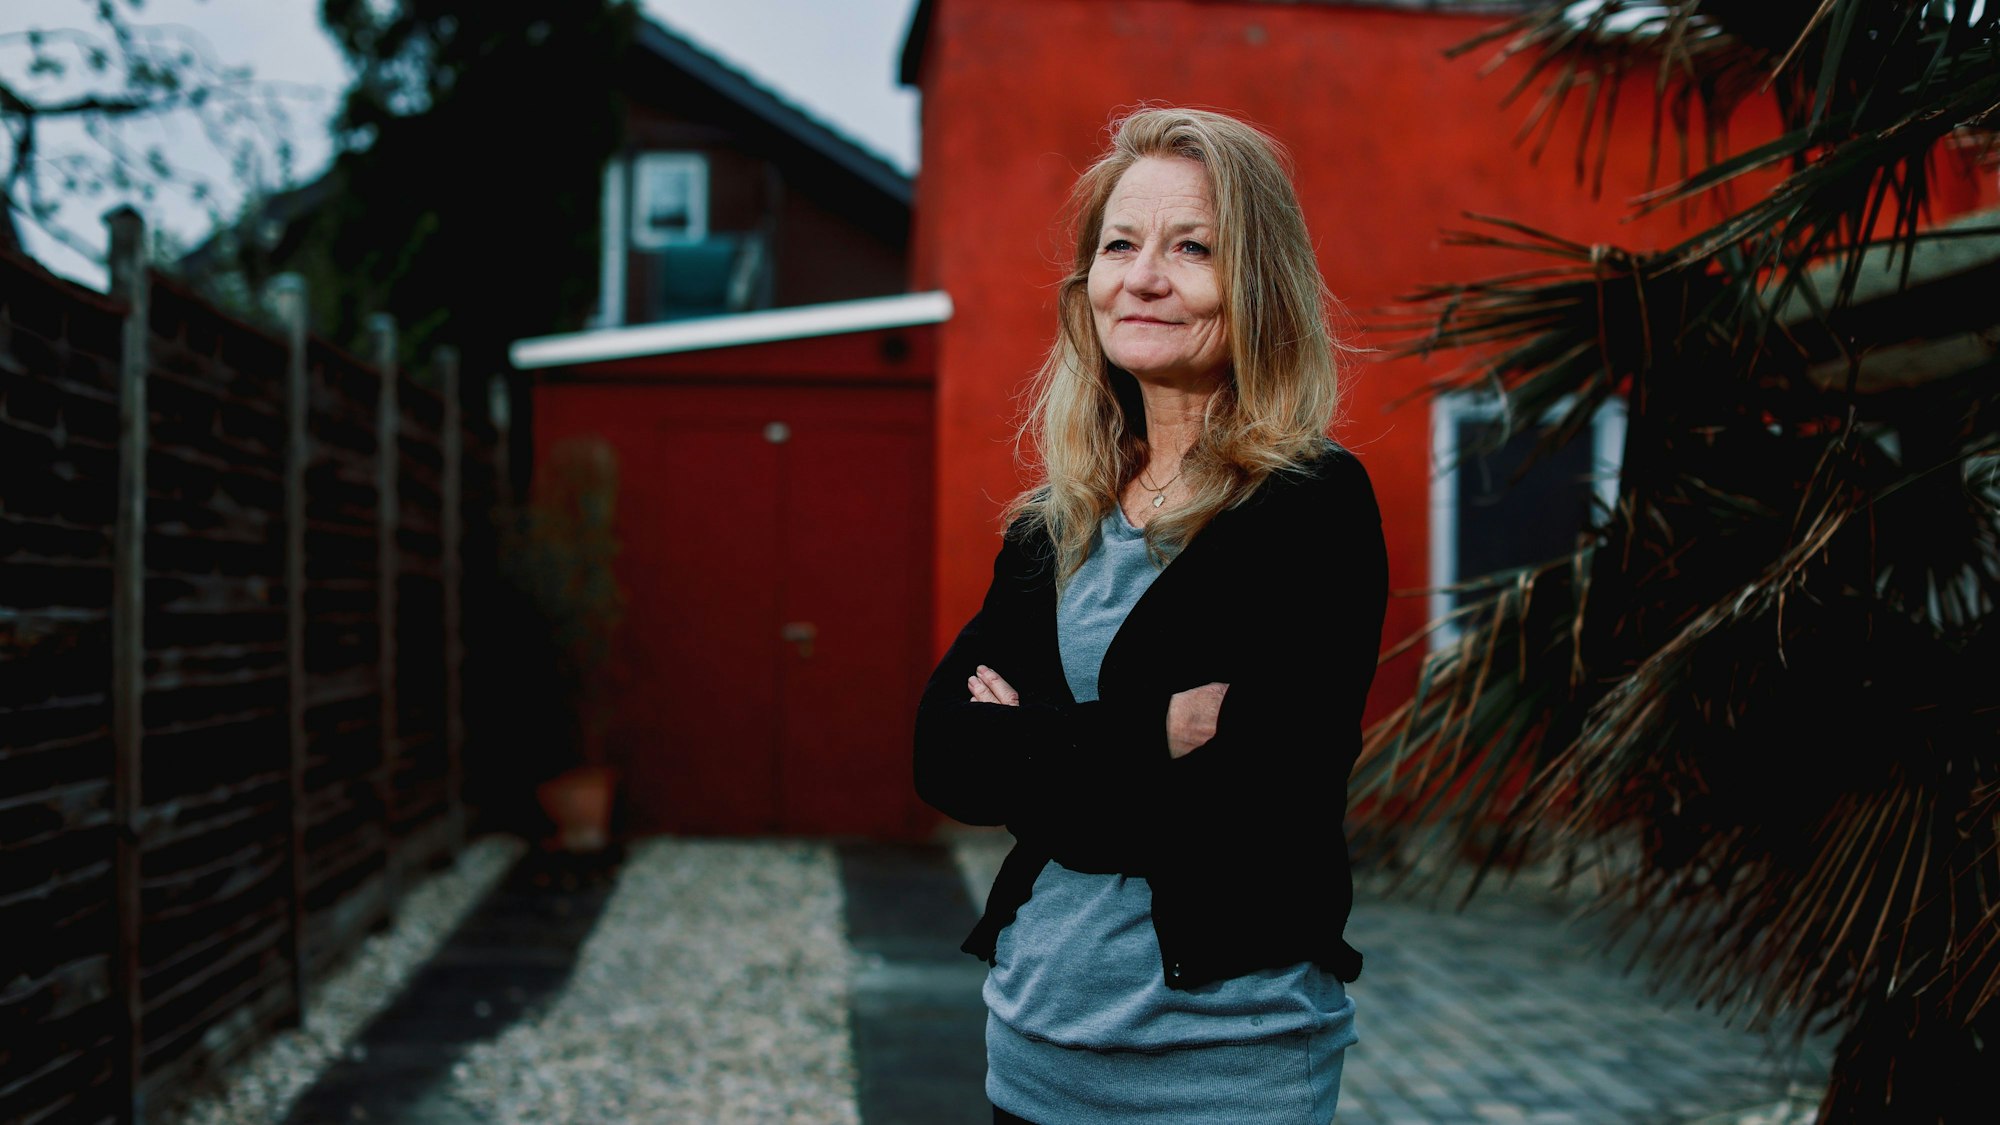 Bettina Linden-Paquignon steht vor einem roten Haus in Bonn.